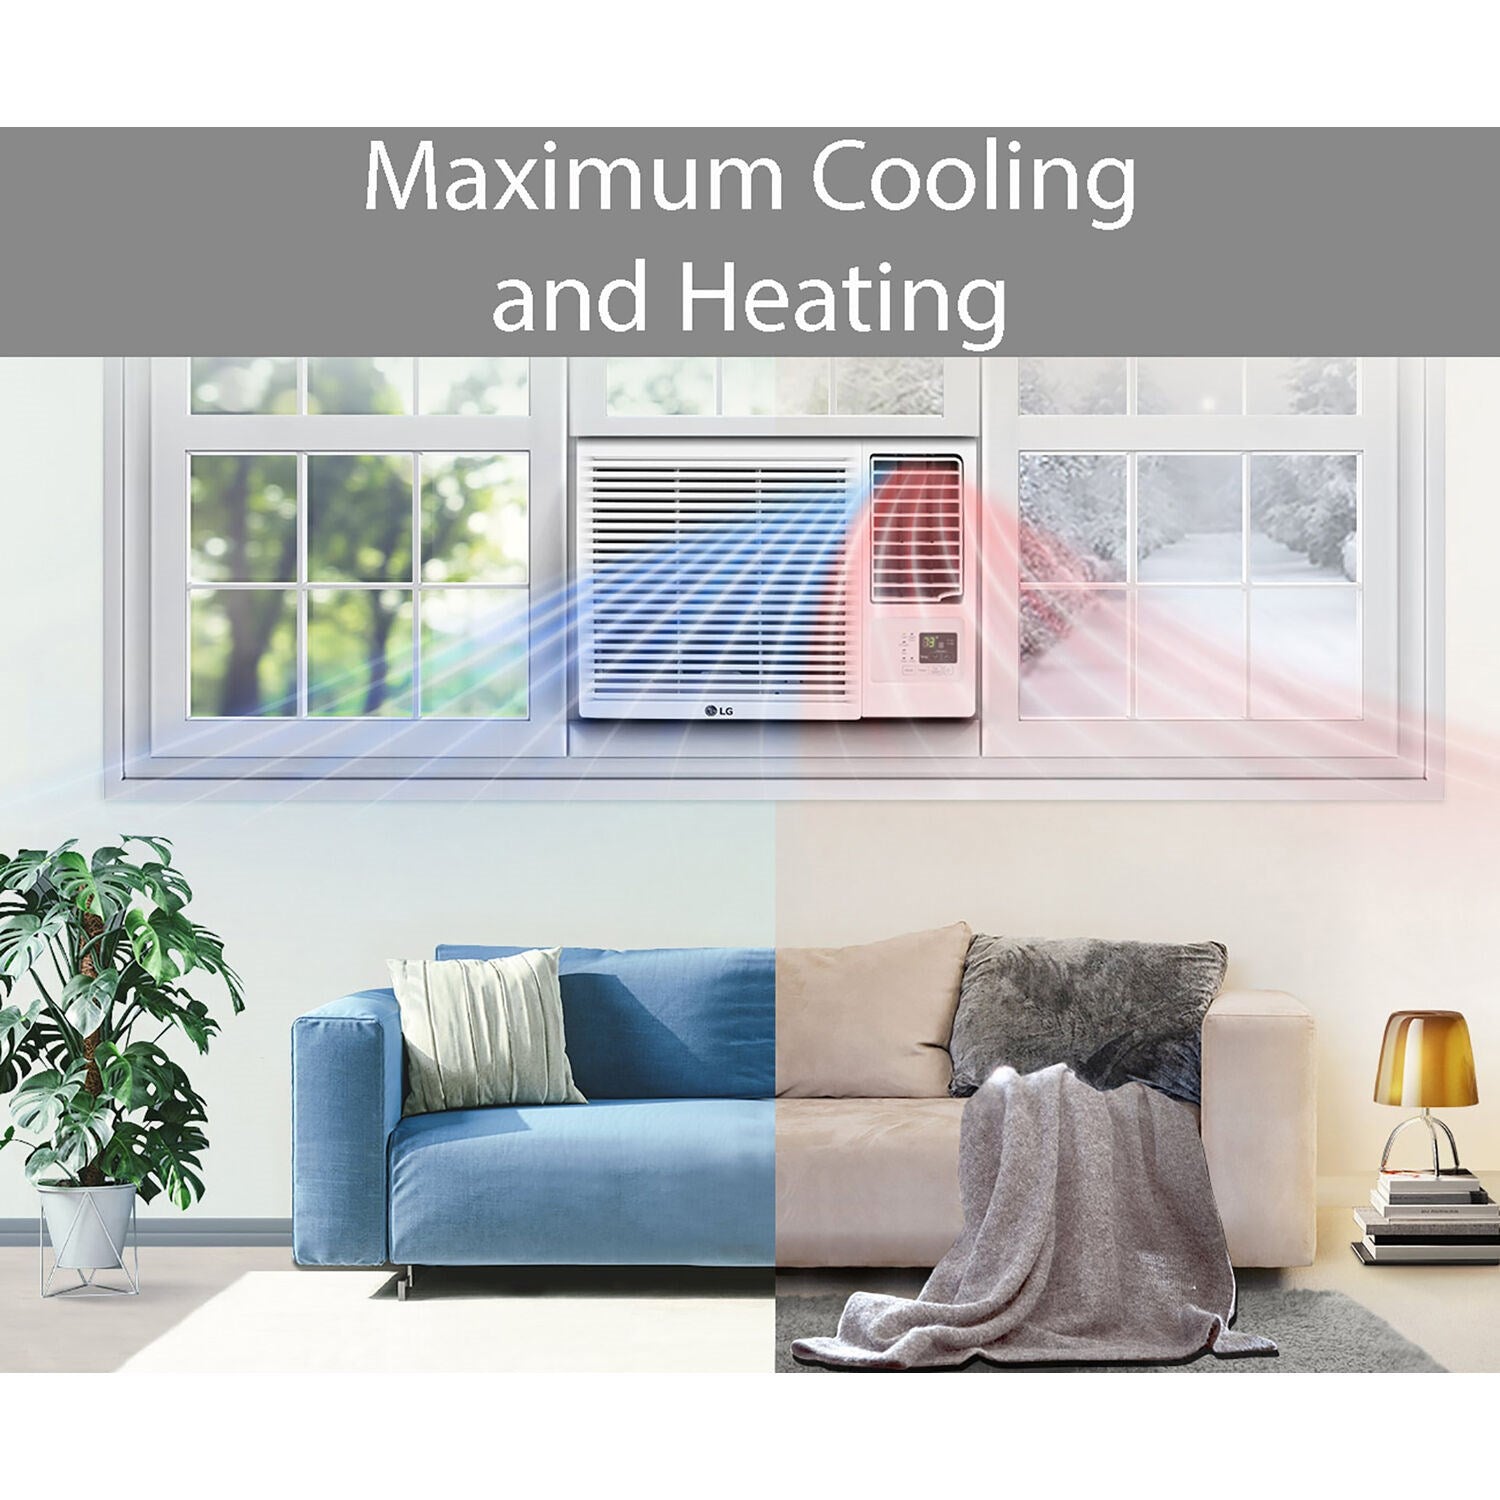 LG - 18,000 BTU Heat/Cool Window Air Conditioner w/Wifi Controls | LW1821HRSM